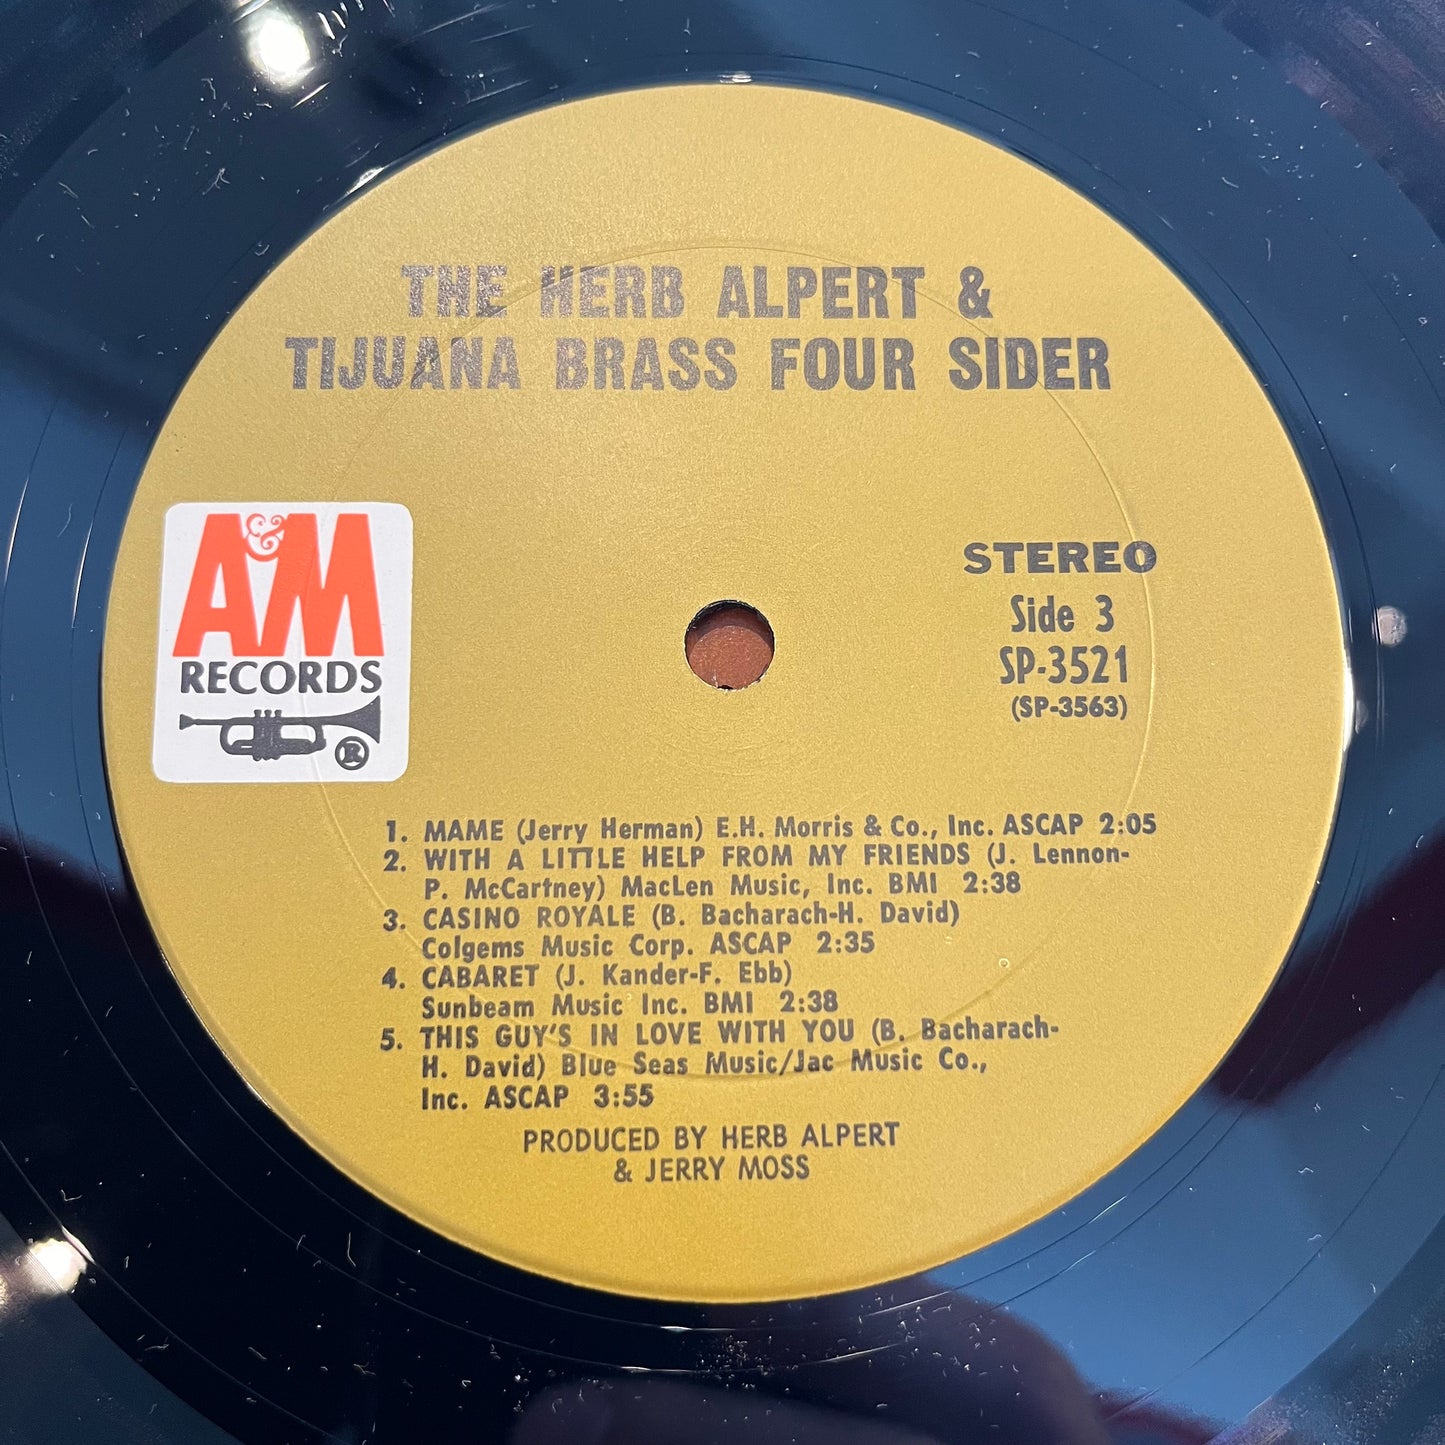 Herb Alpert & The Tijuana Brass Foursider *MONARCH* 2xLP Near Mint (NM or M-) Near Mint (NM or M-)